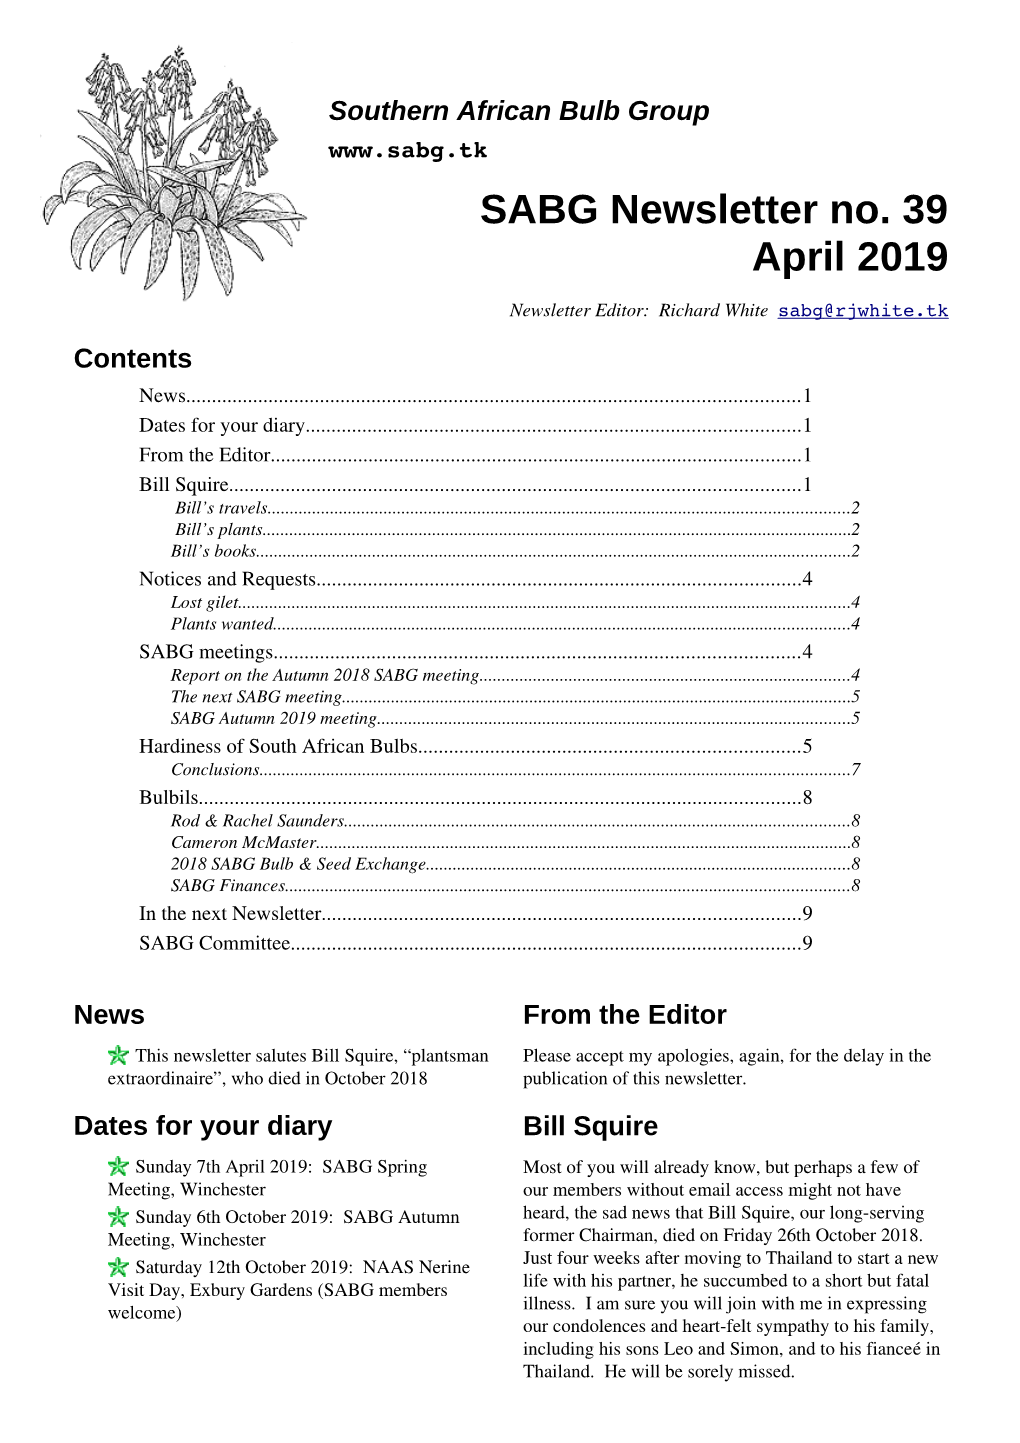 SABG Newsletter No. 39 April 2019